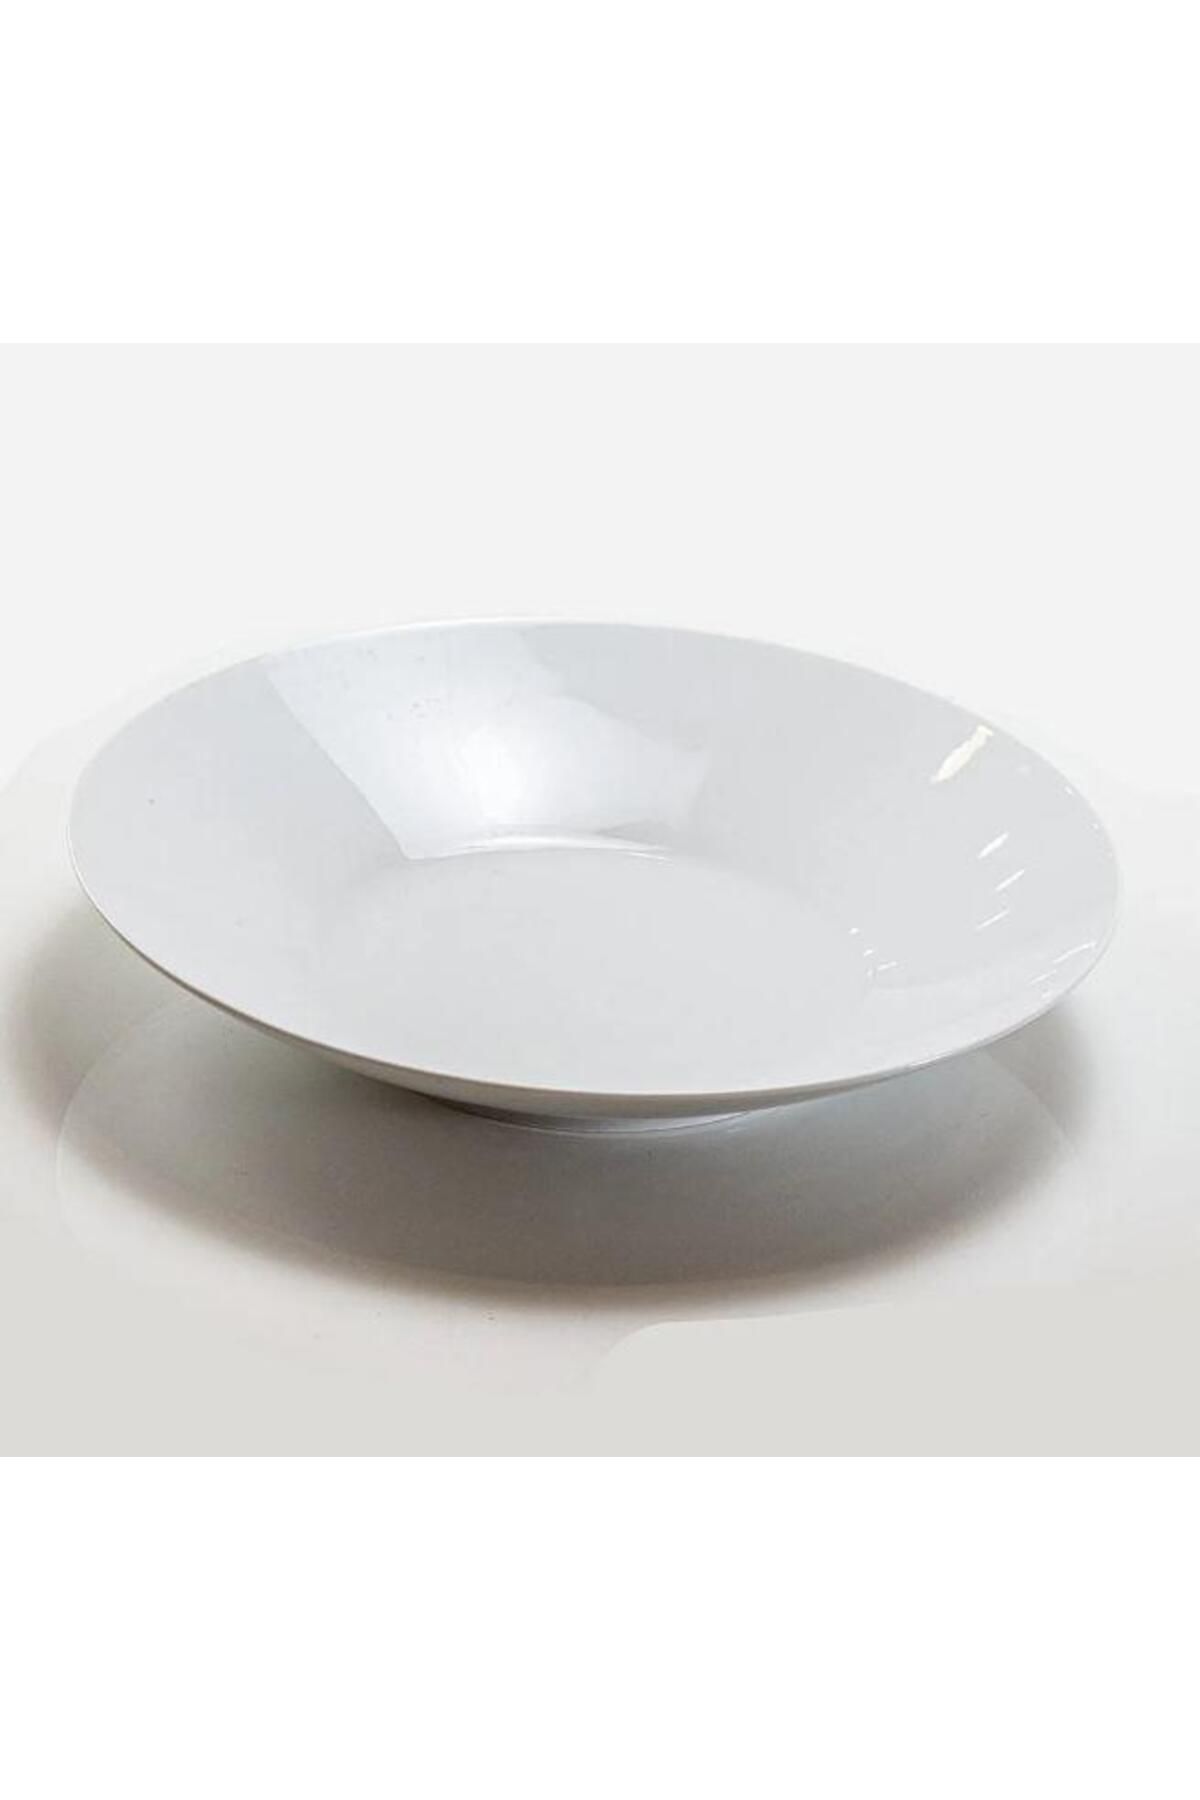 Güral Porselen 34 cm Çok Amaçlı Salata Komposto Kasesi, Beyaz